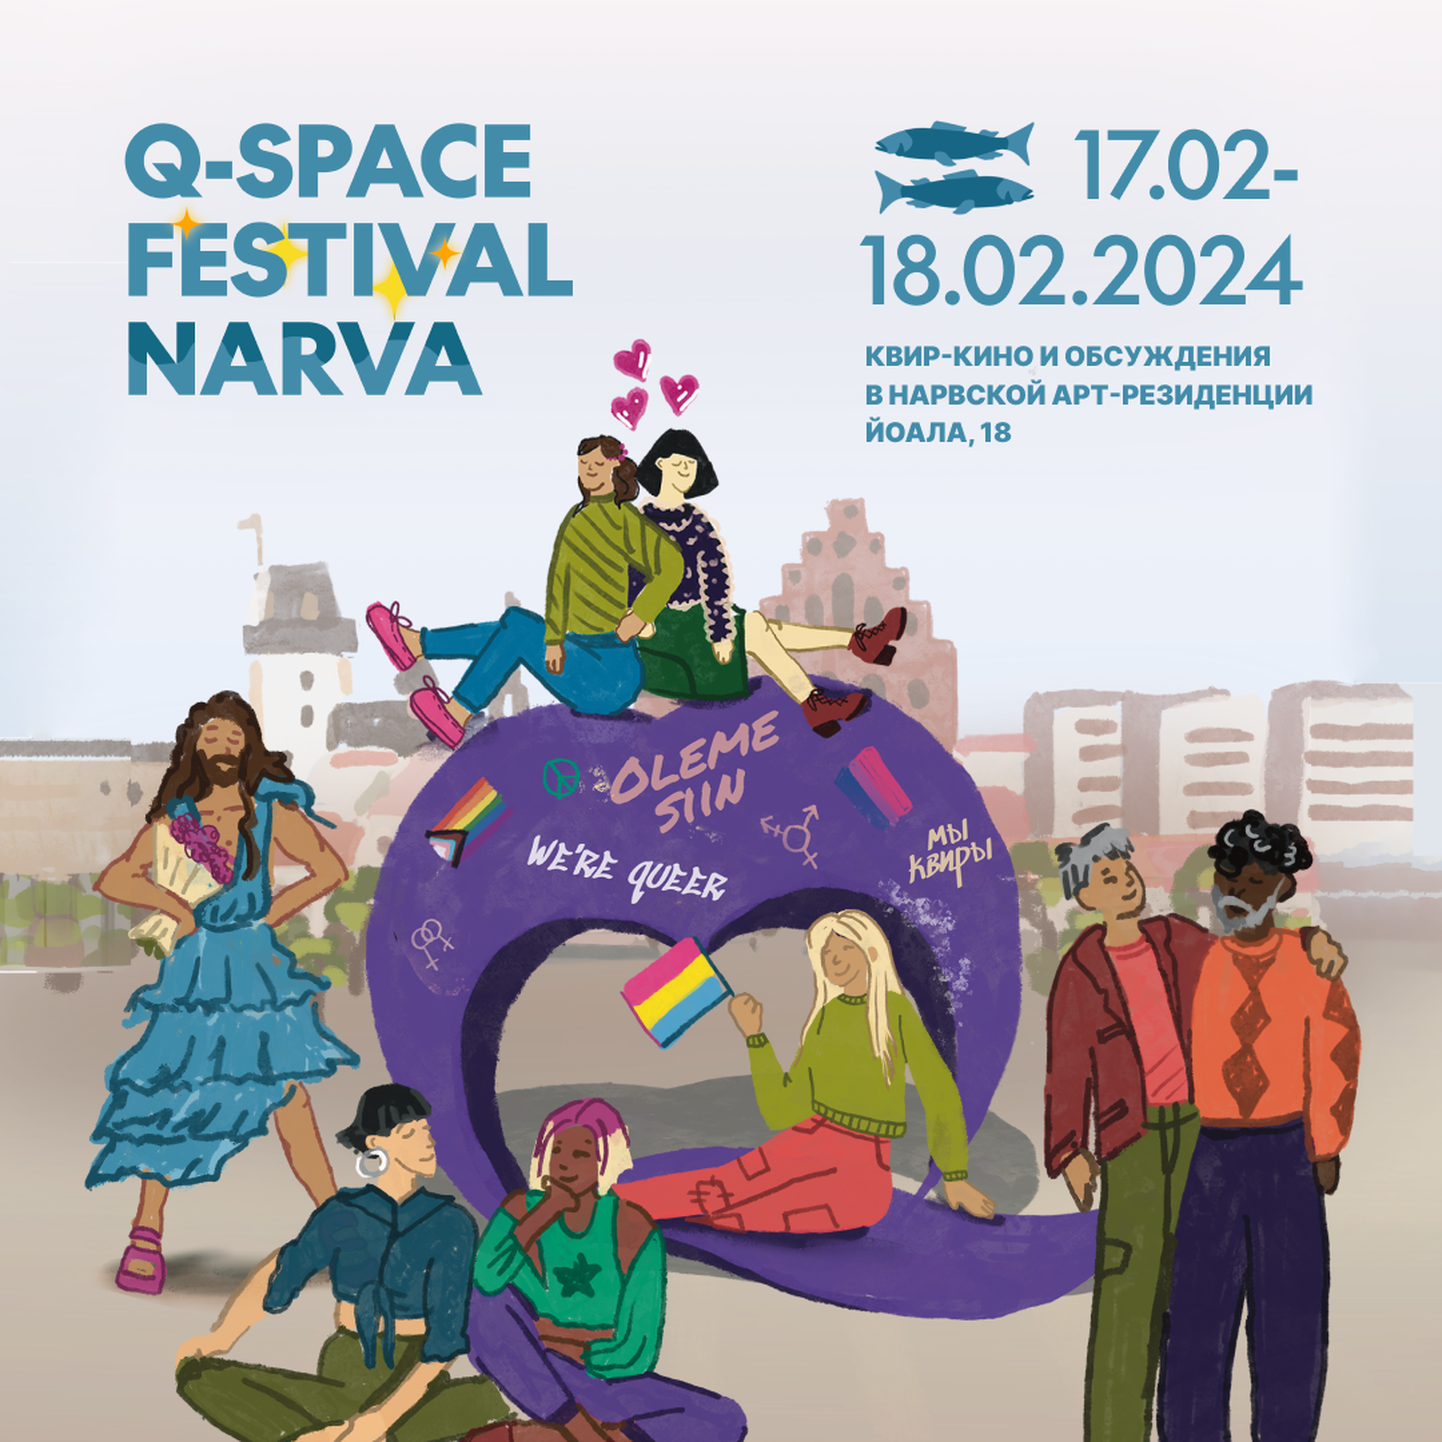 Фестиваль ЛГБТК+ культуры Q-Space в Нарвской арт-резиденции (NART).